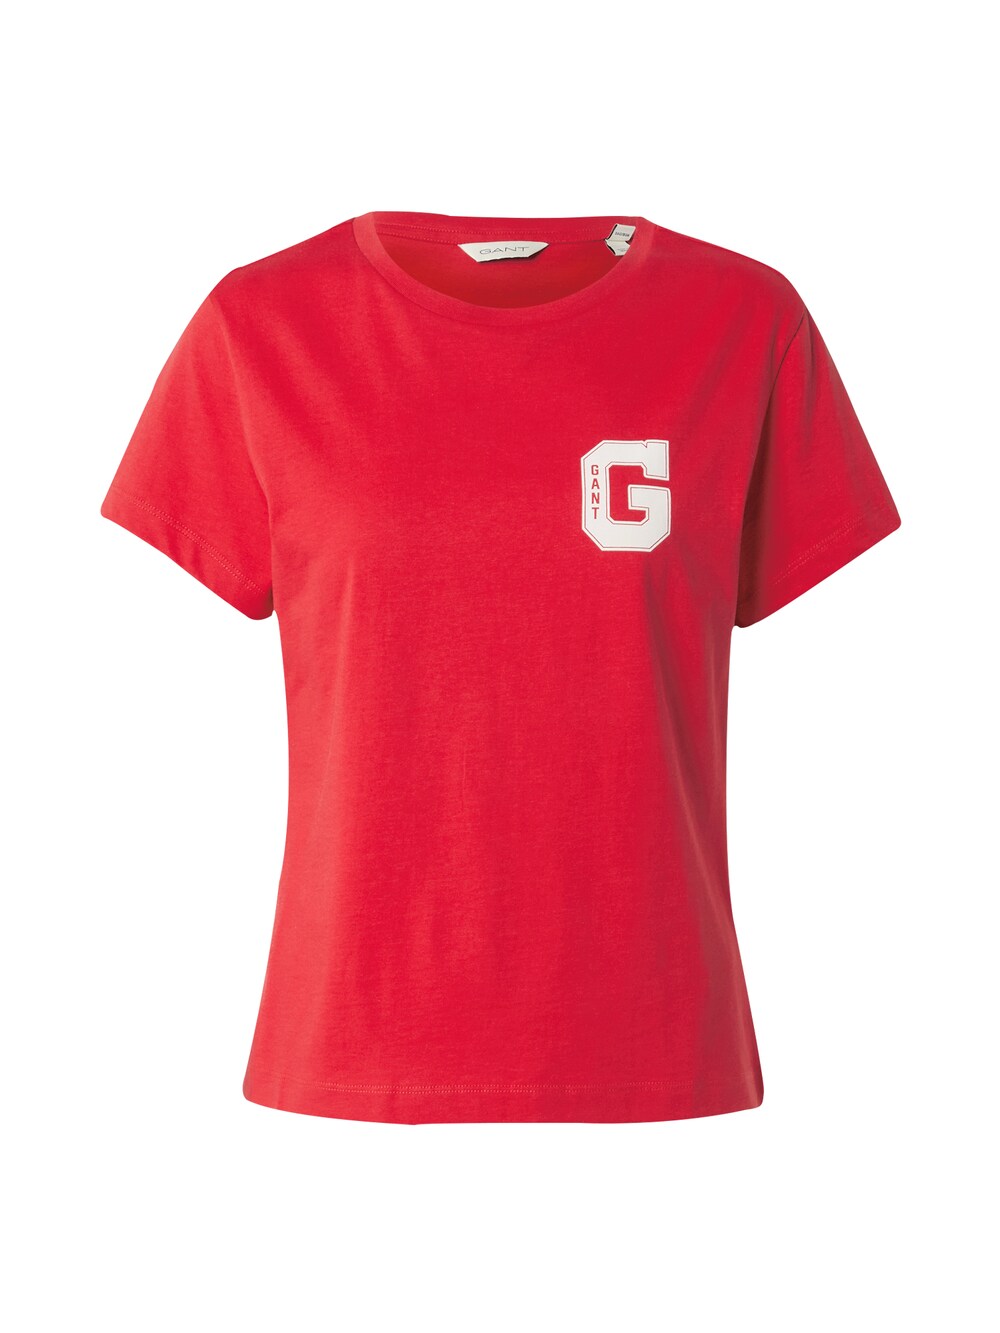 Рубашка Gant, красный